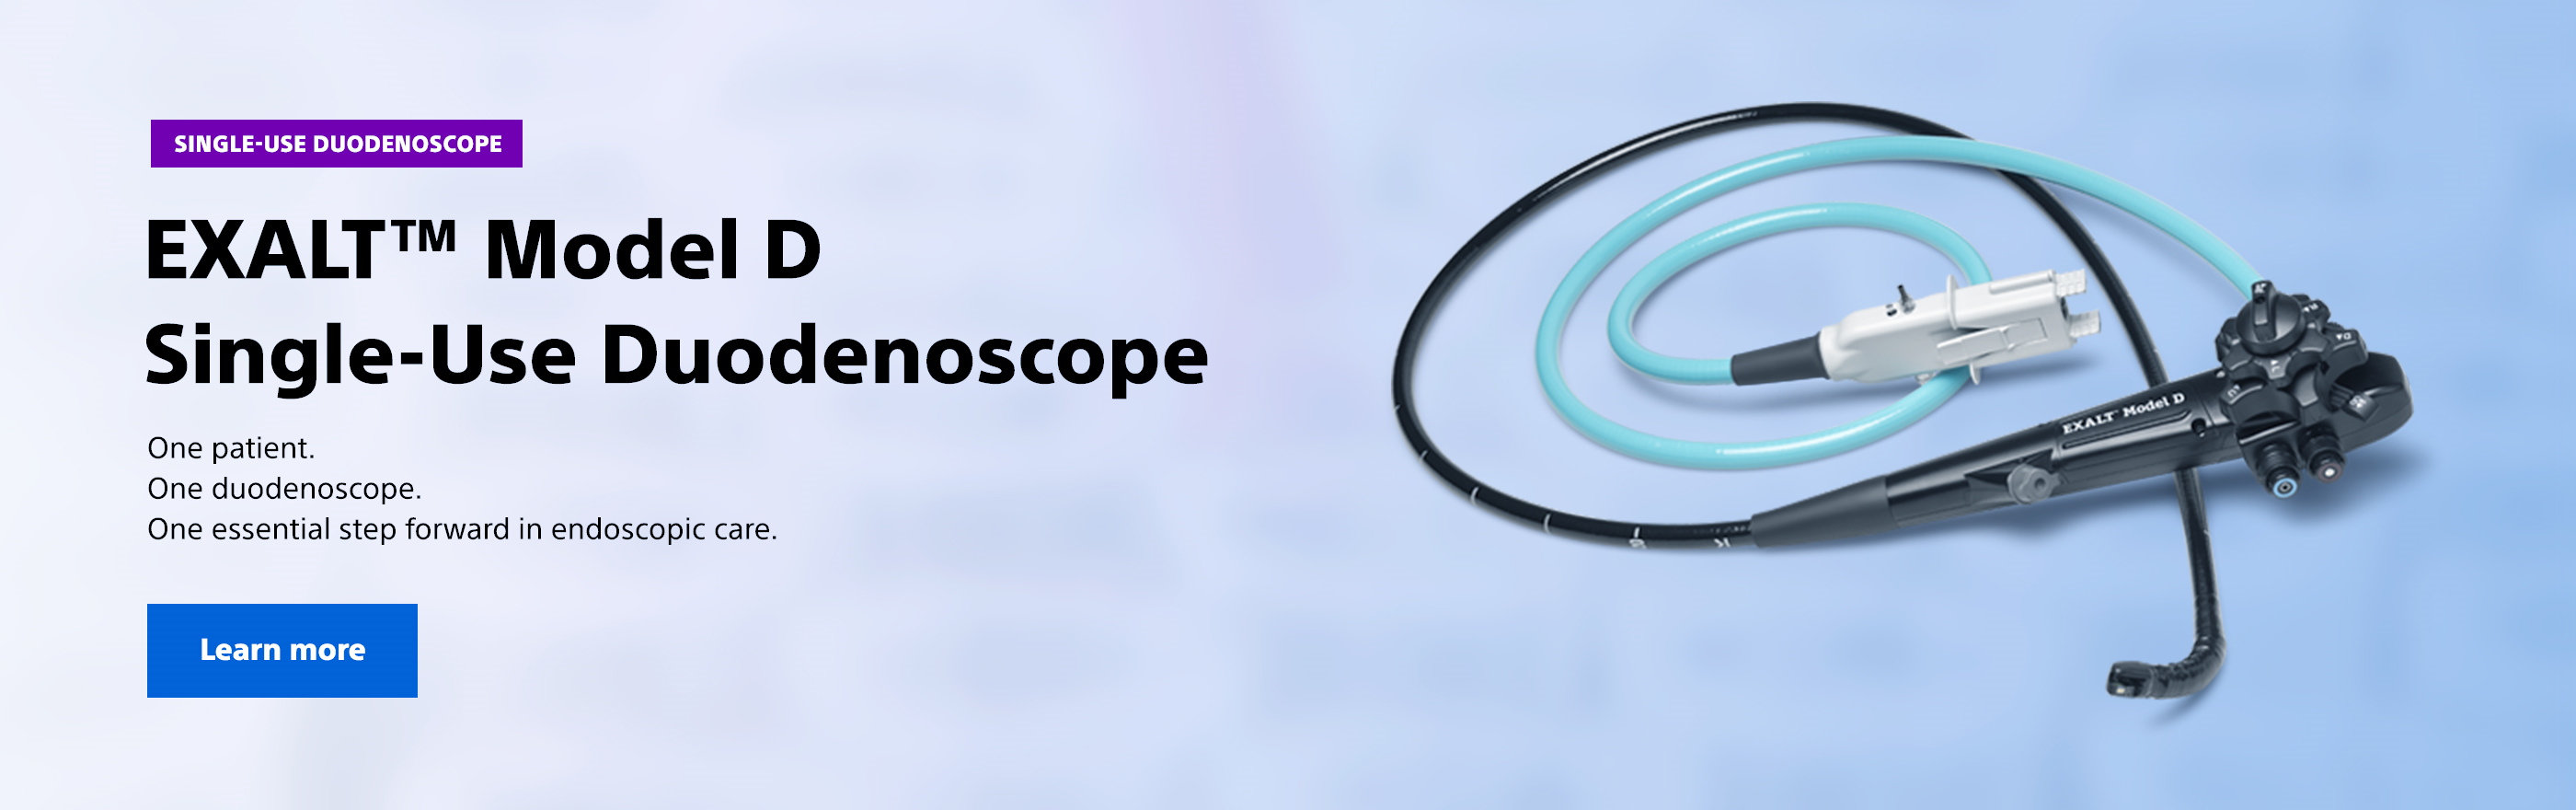 Single-use Duodenoscope